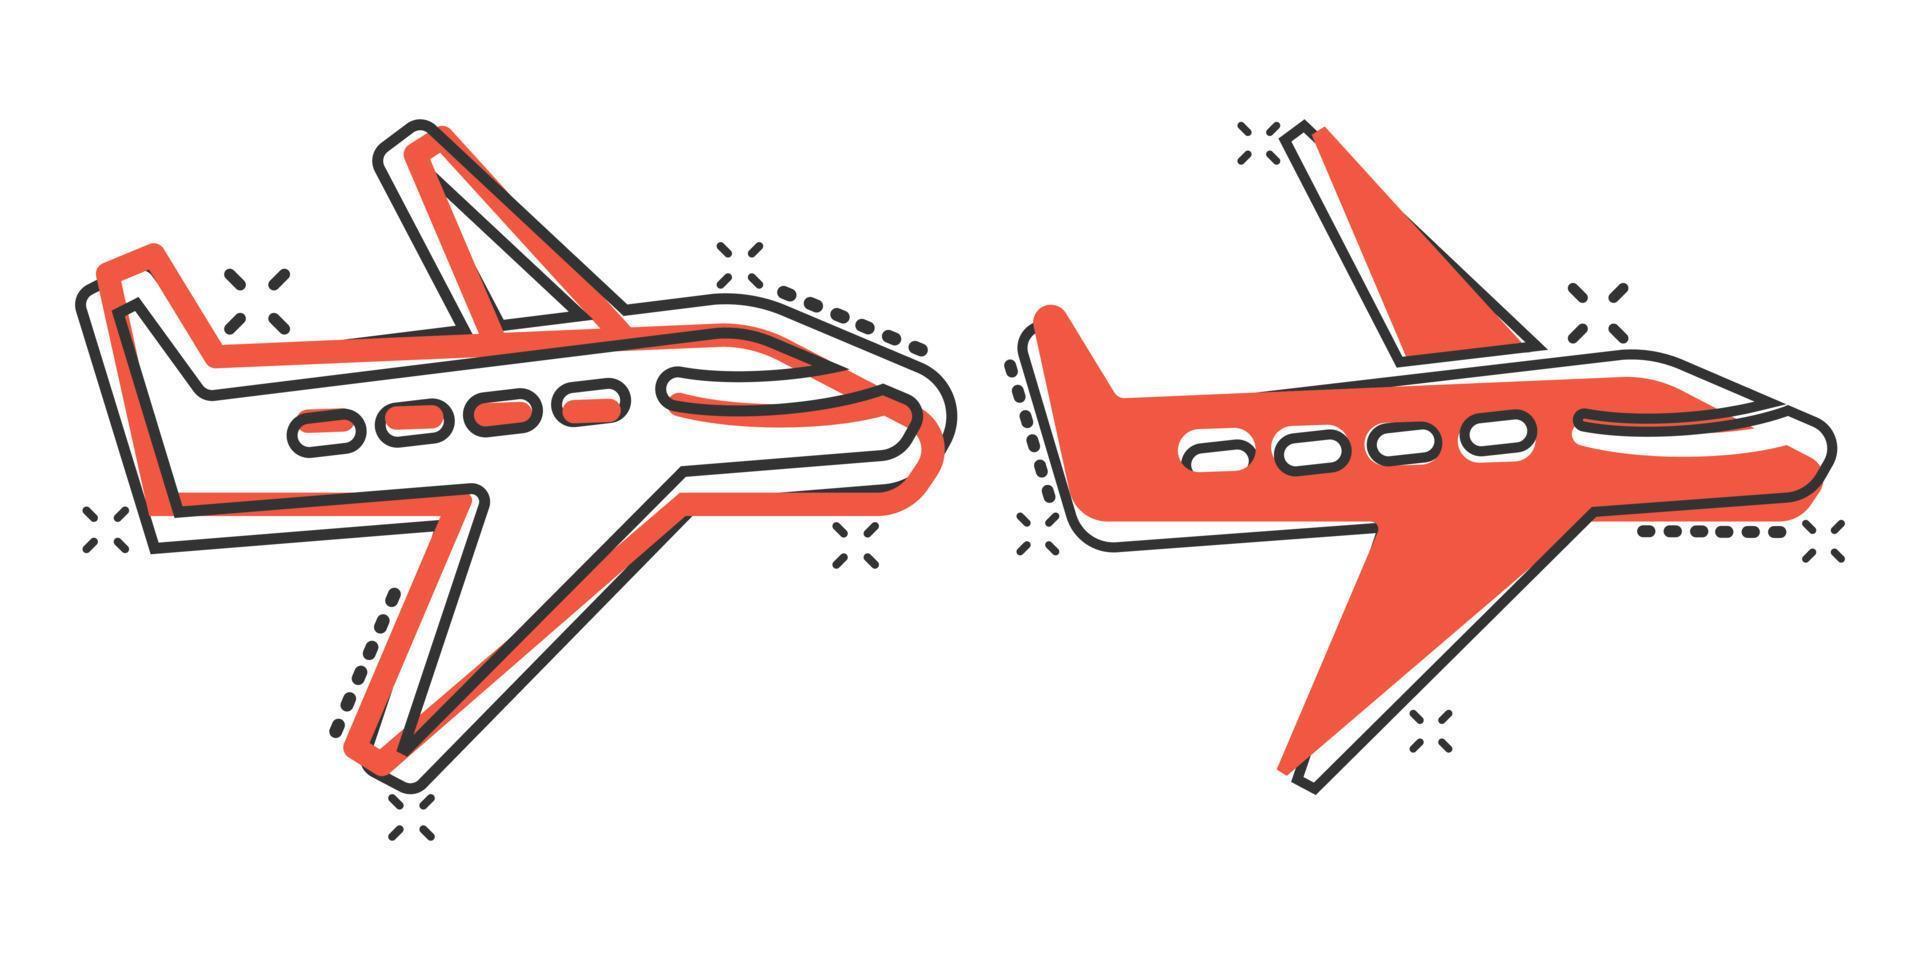 icono de avión en estilo cómico. ilustración de vector de dibujos animados de avión sobre fondo blanco aislado. concepto de negocio de efecto de salpicadura de avión de vuelo.